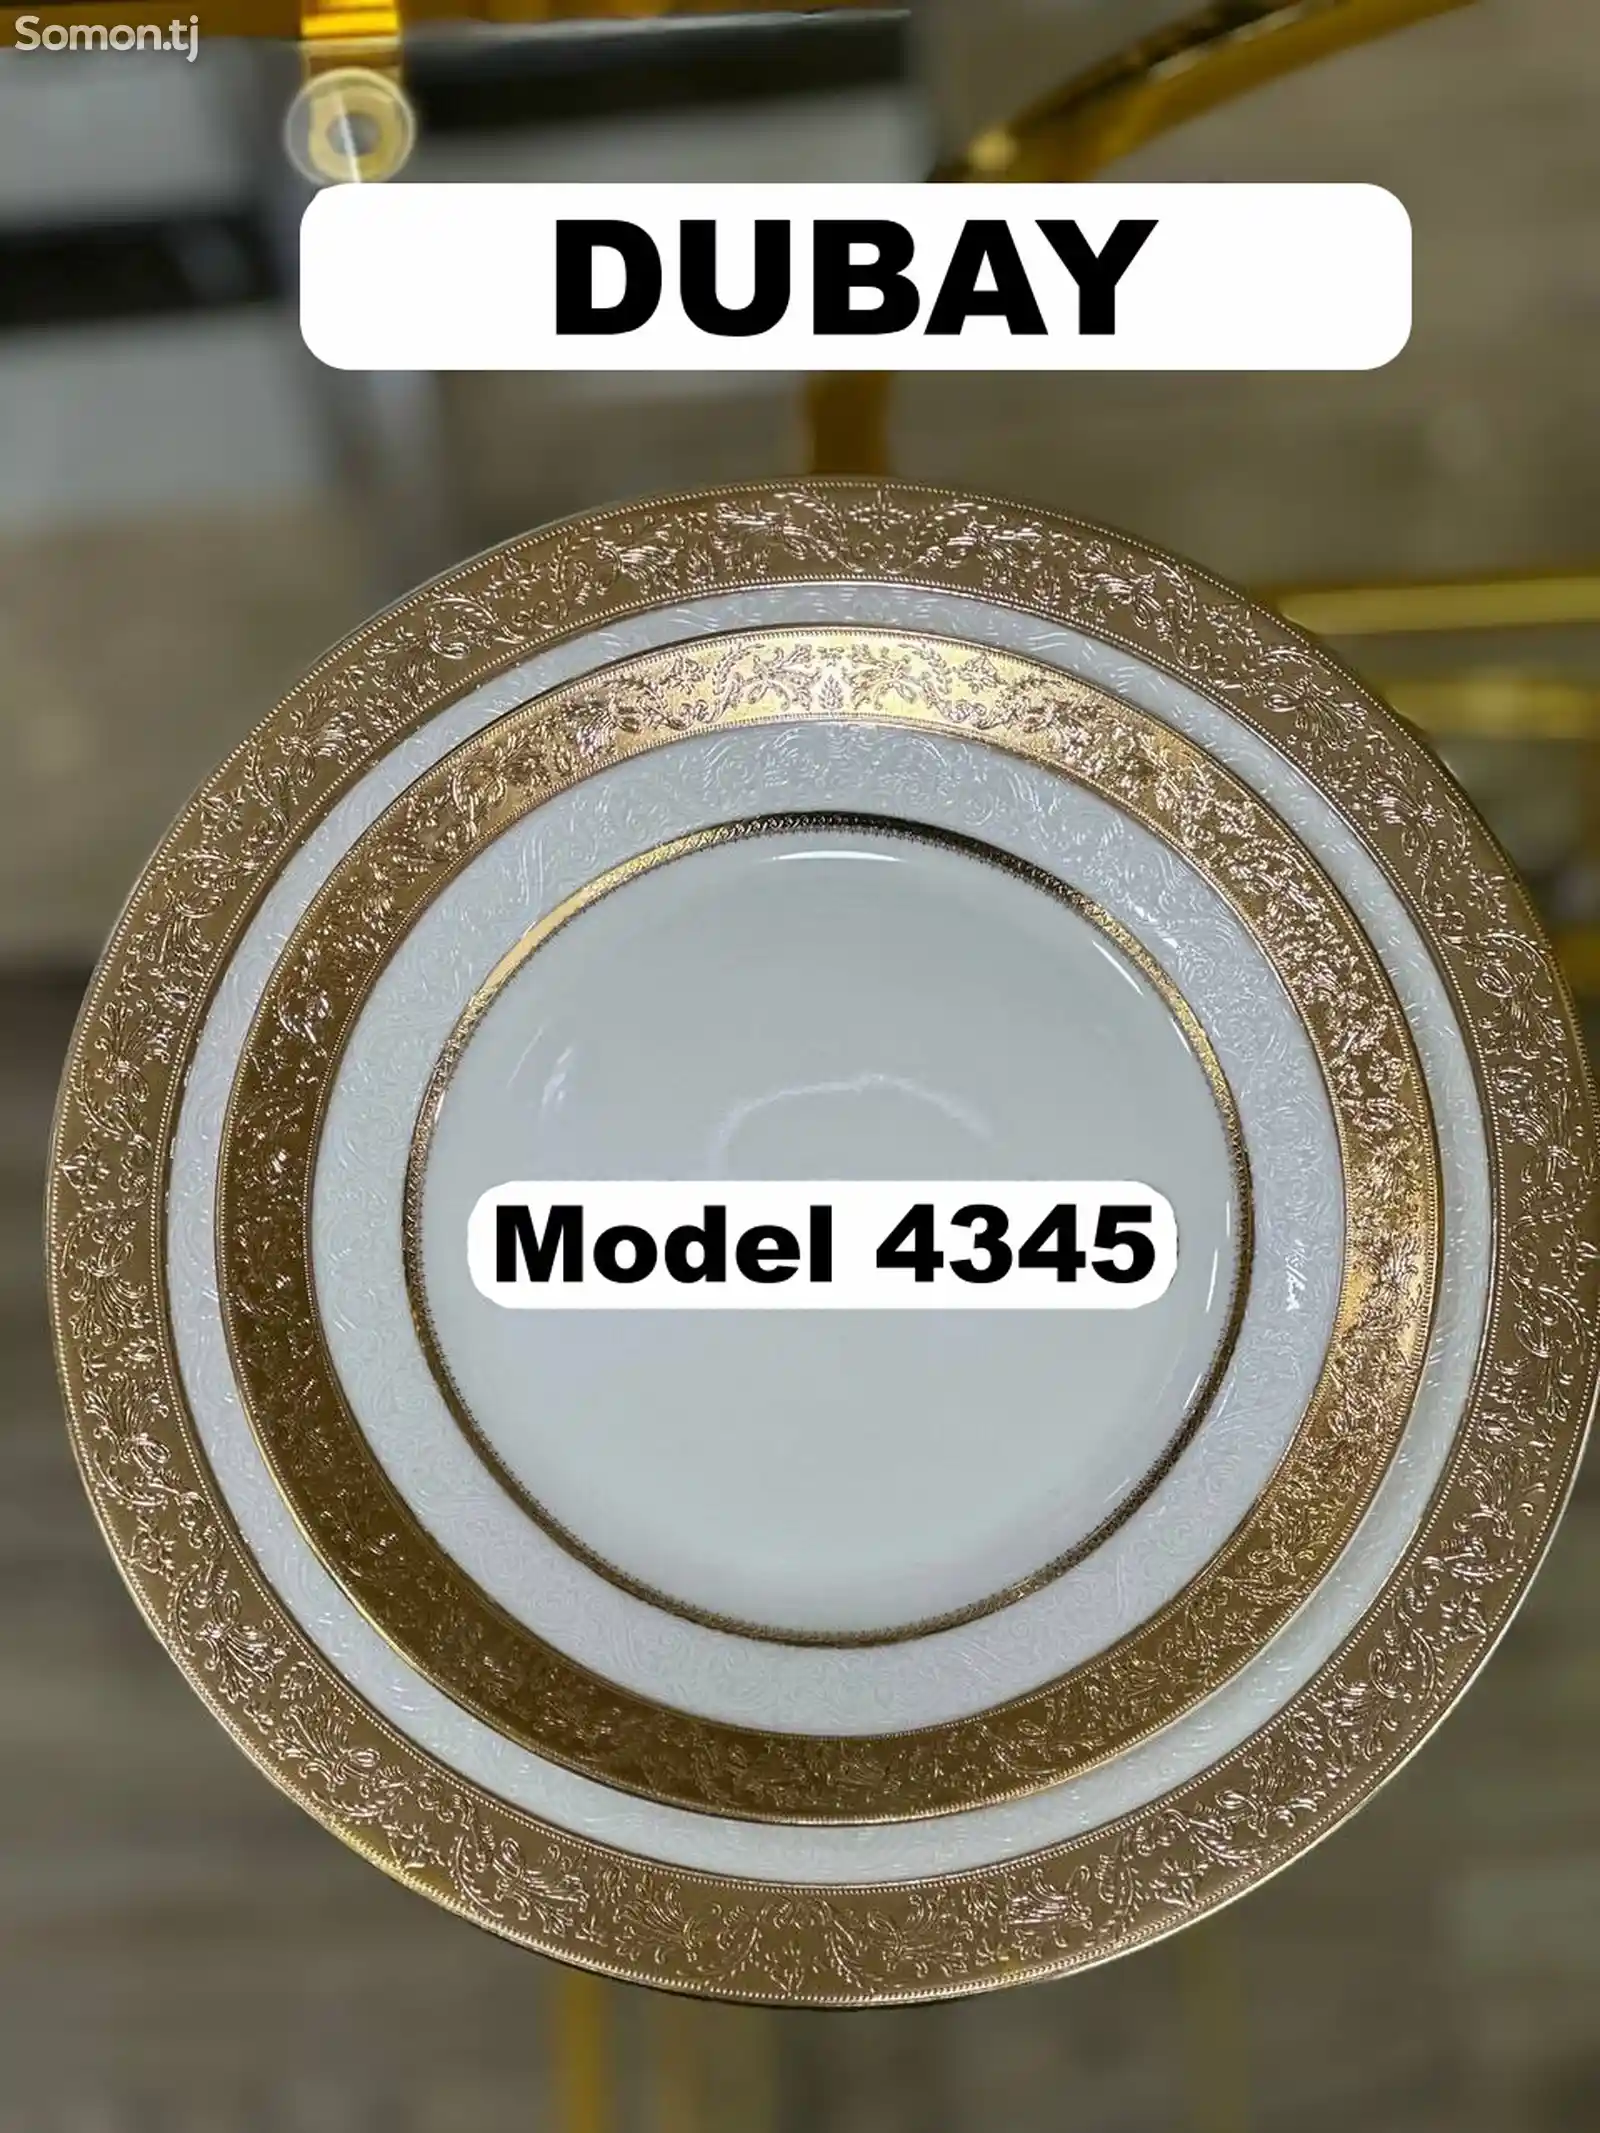 Набор посуды Dubay модель 4345